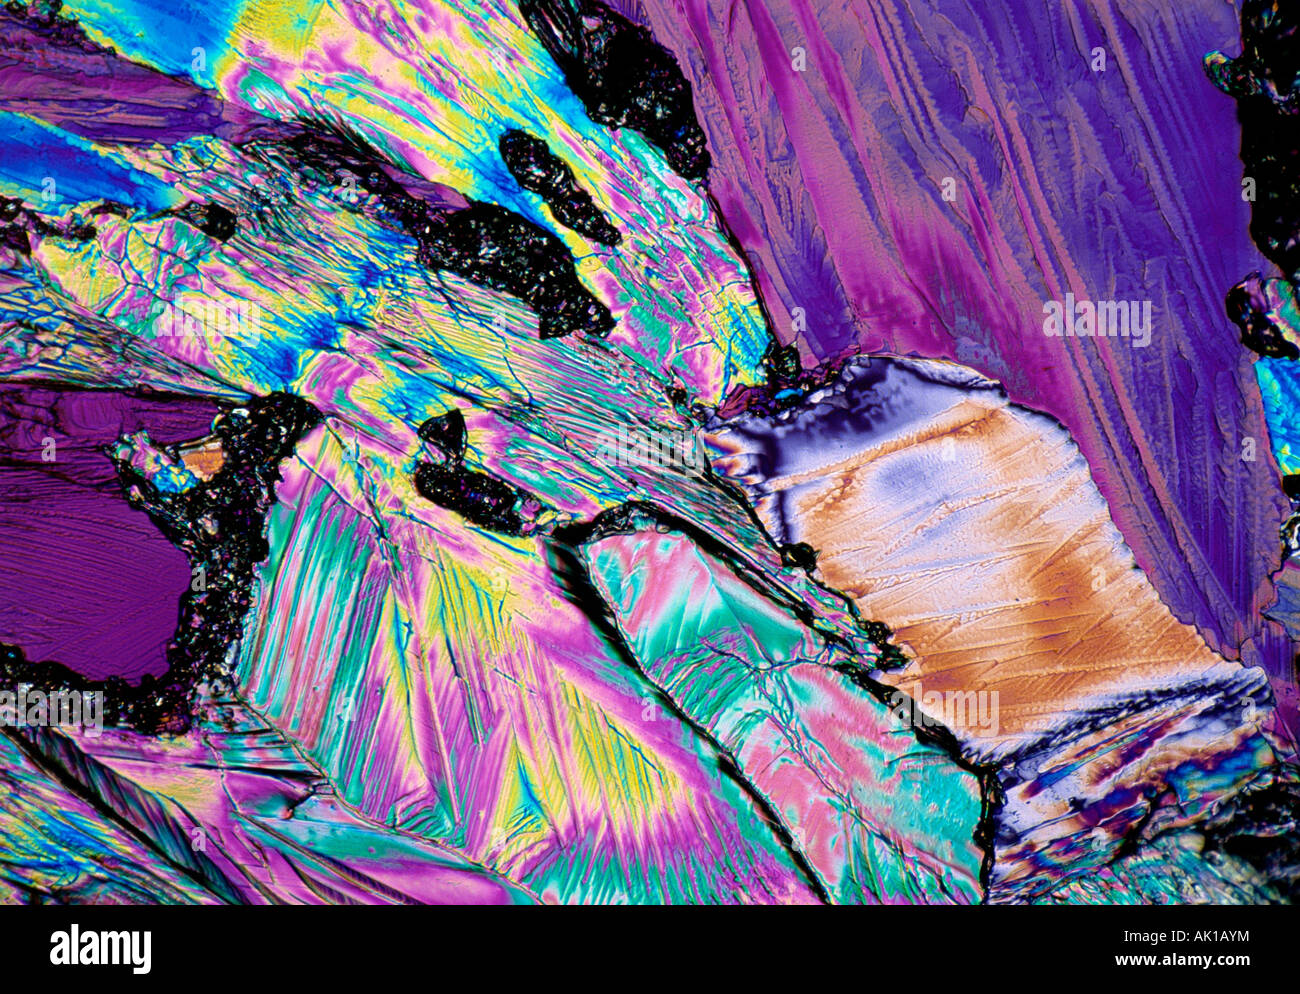 Ancora in vita. Immagine microscopica di cristalli di chimica in luce polarizzata. La vitamina B15 (diisopropilammina dicloroacetato). Foto Stock